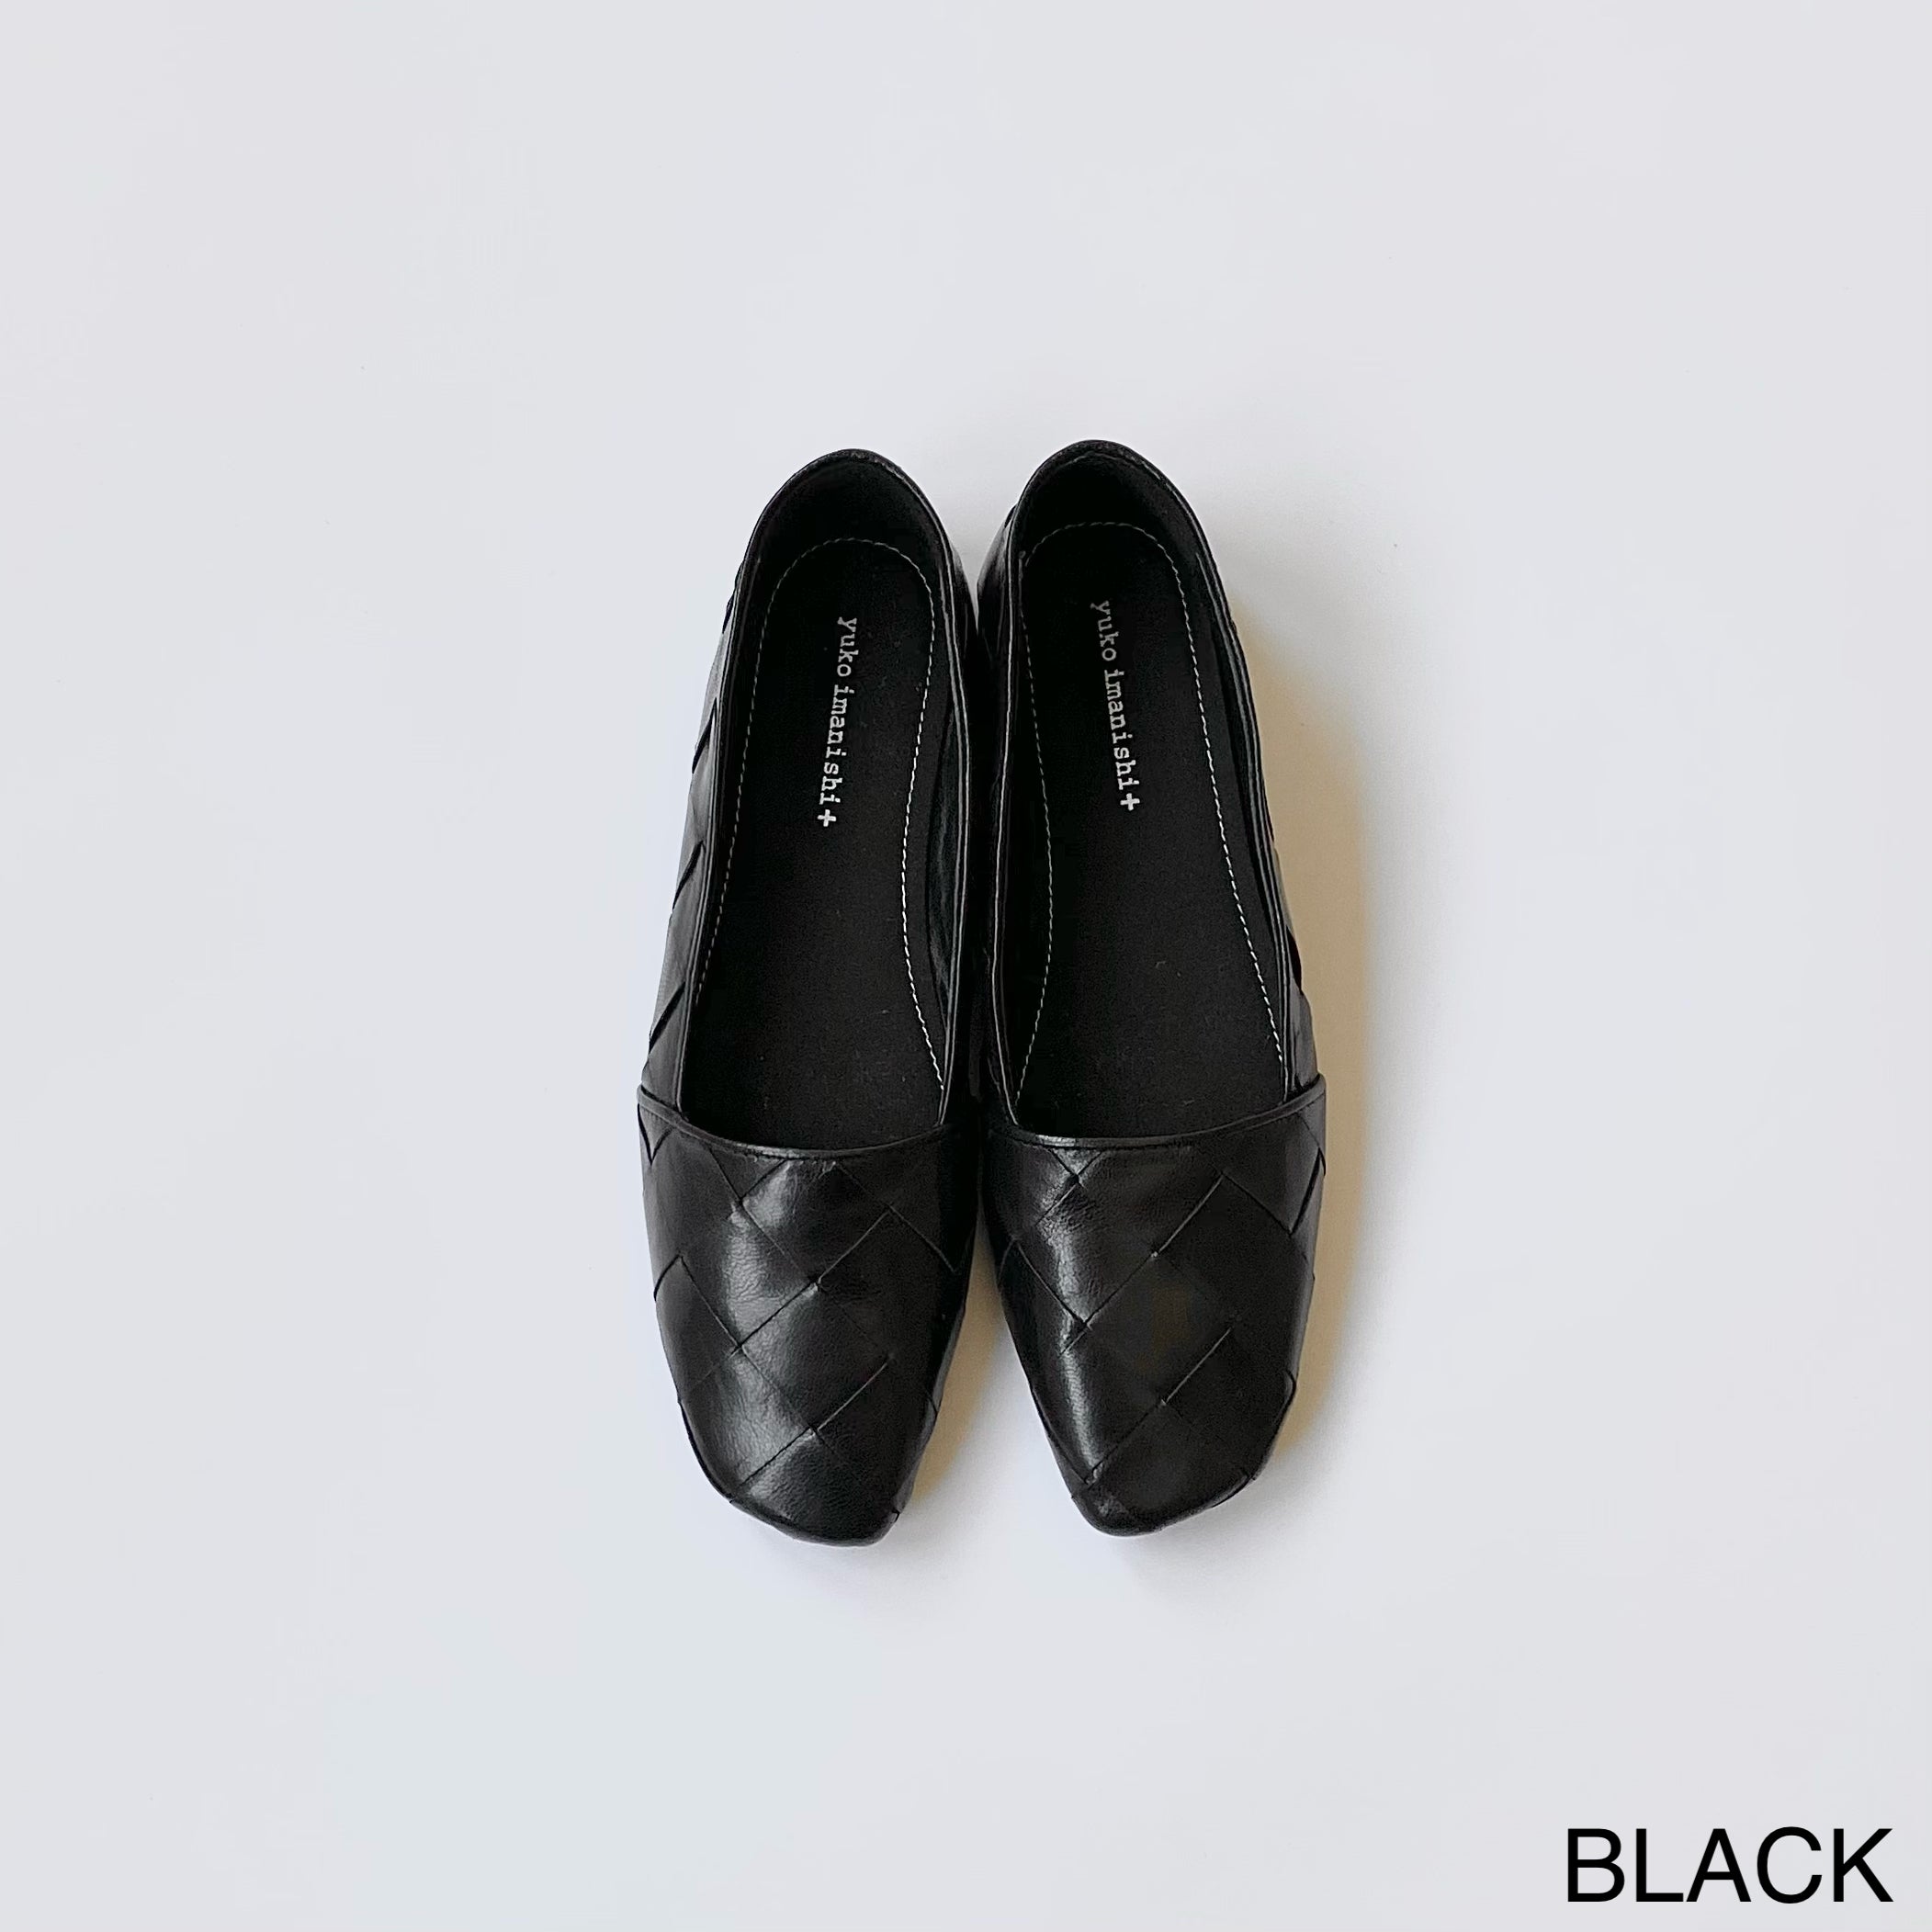 BLACK / 35 (22.2cm)